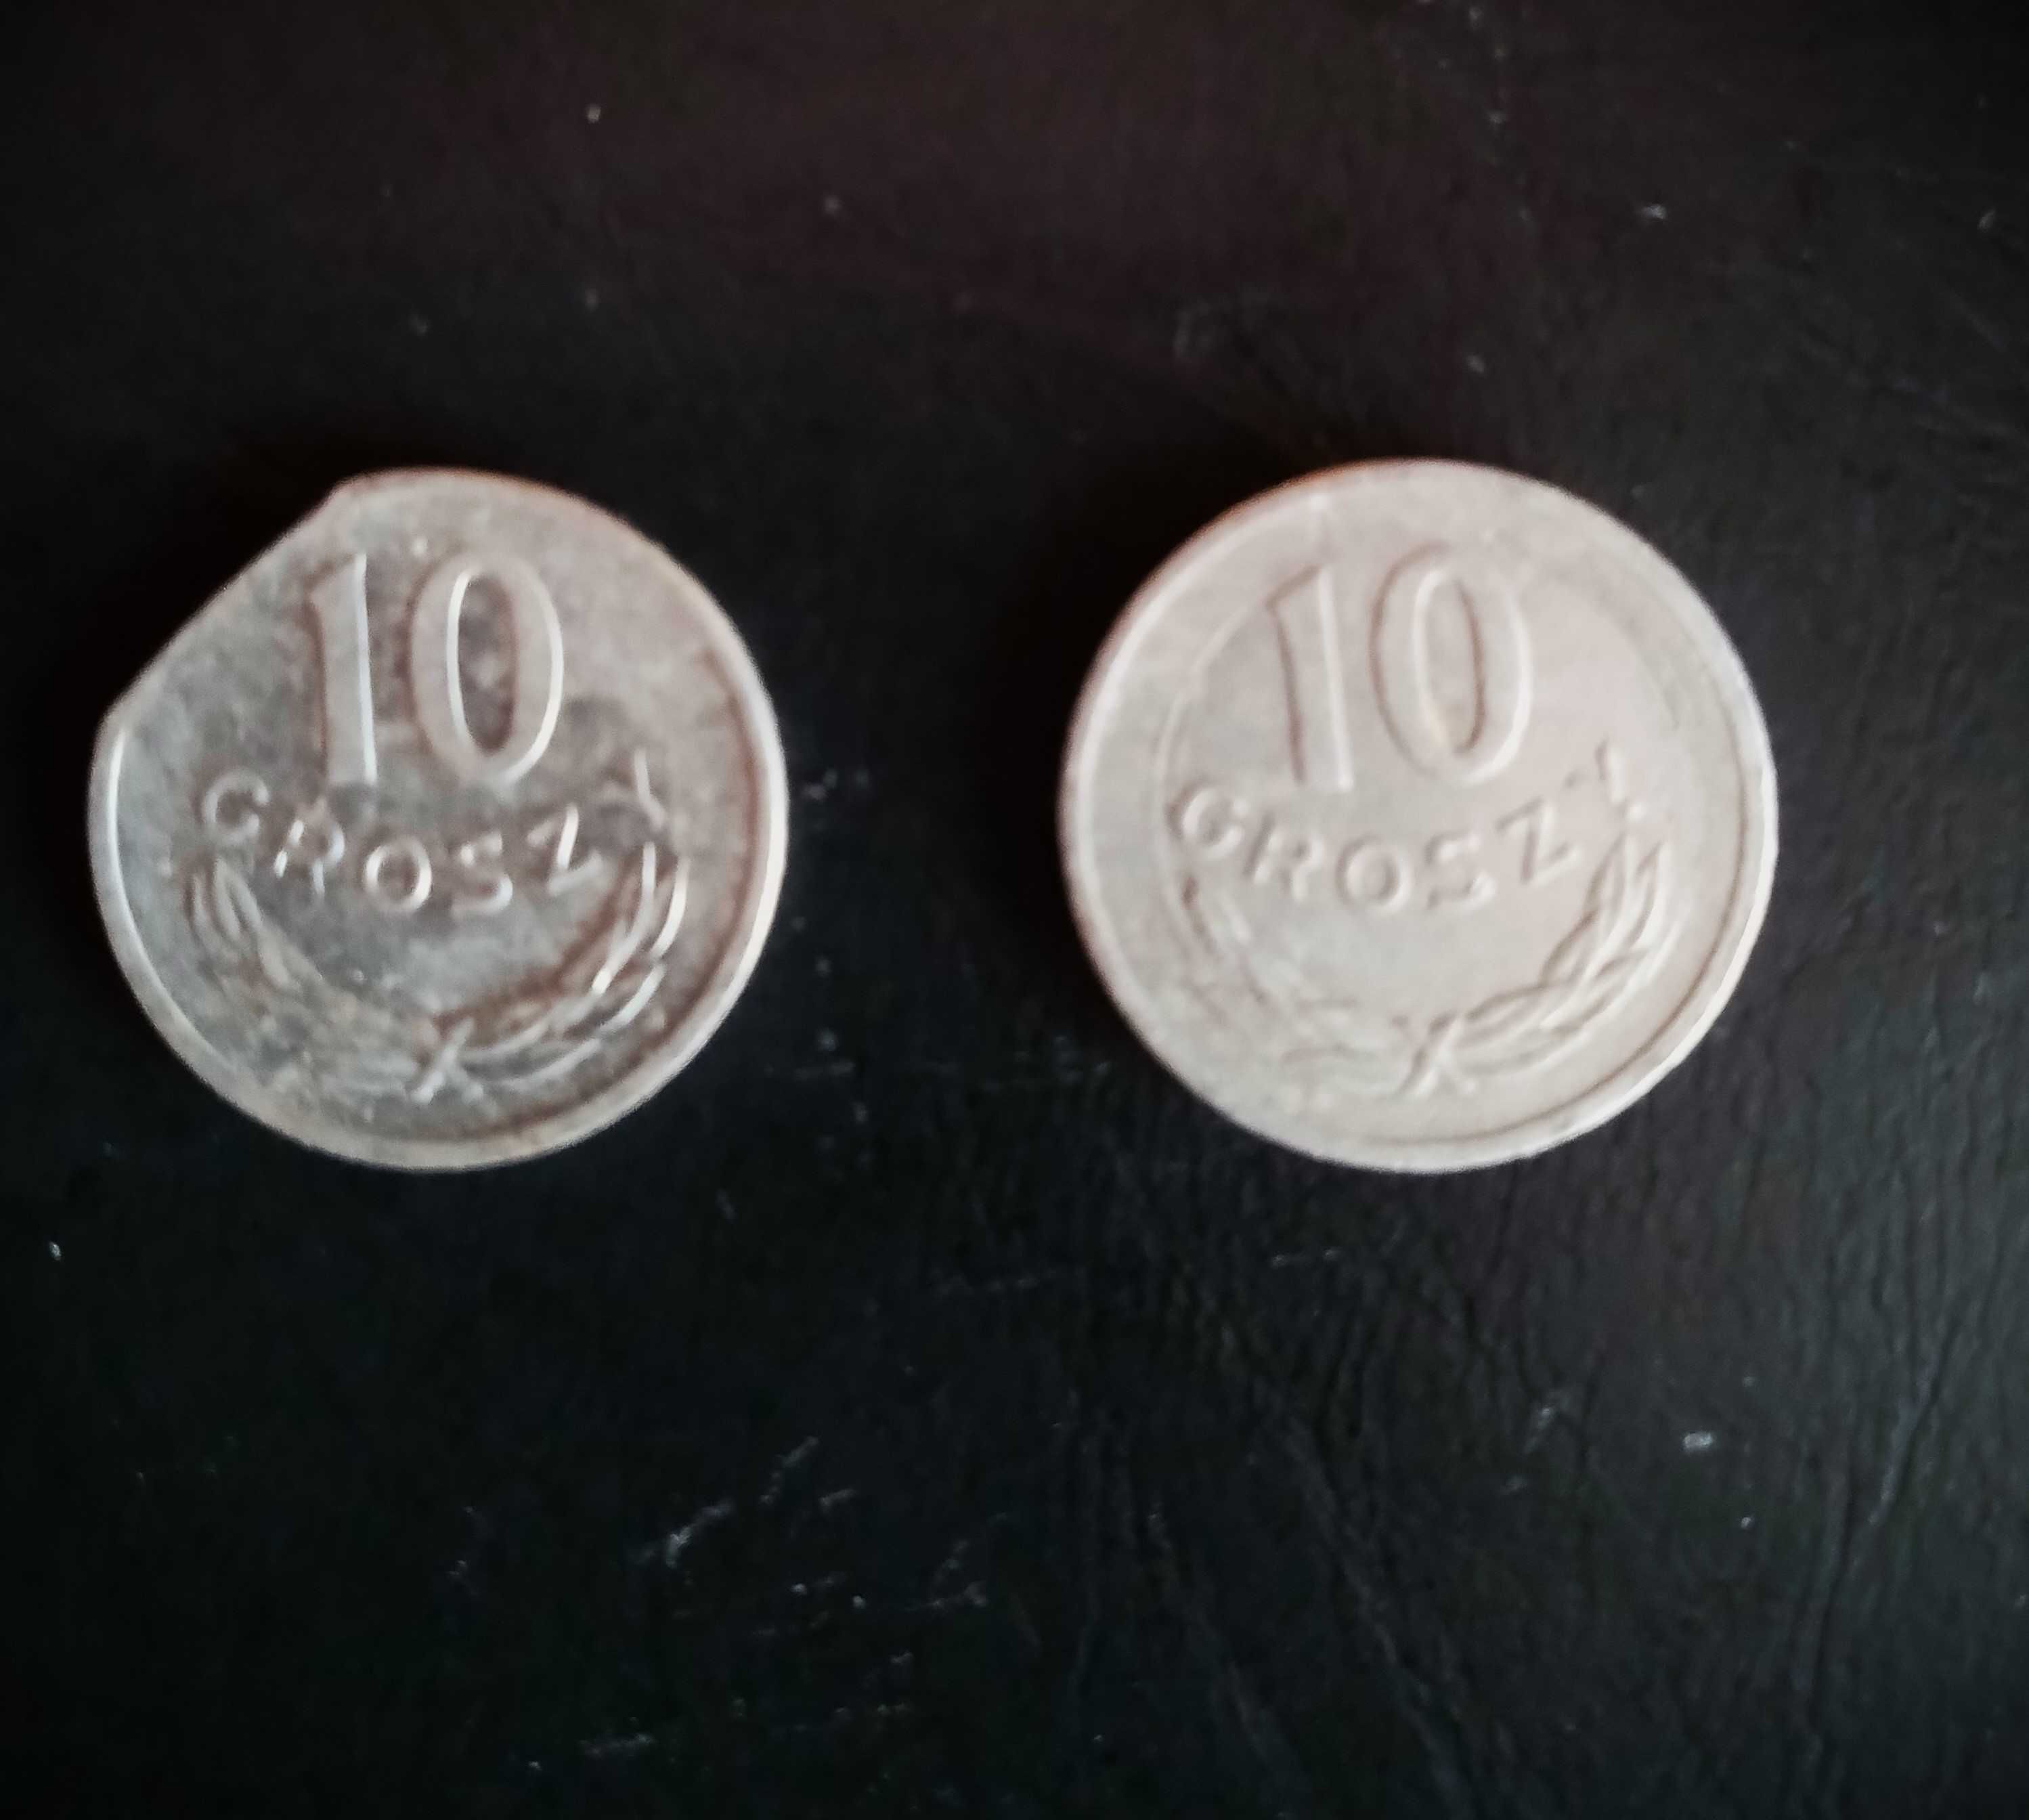 destrukt moneta 10 gr 1971 i 10gr 1979